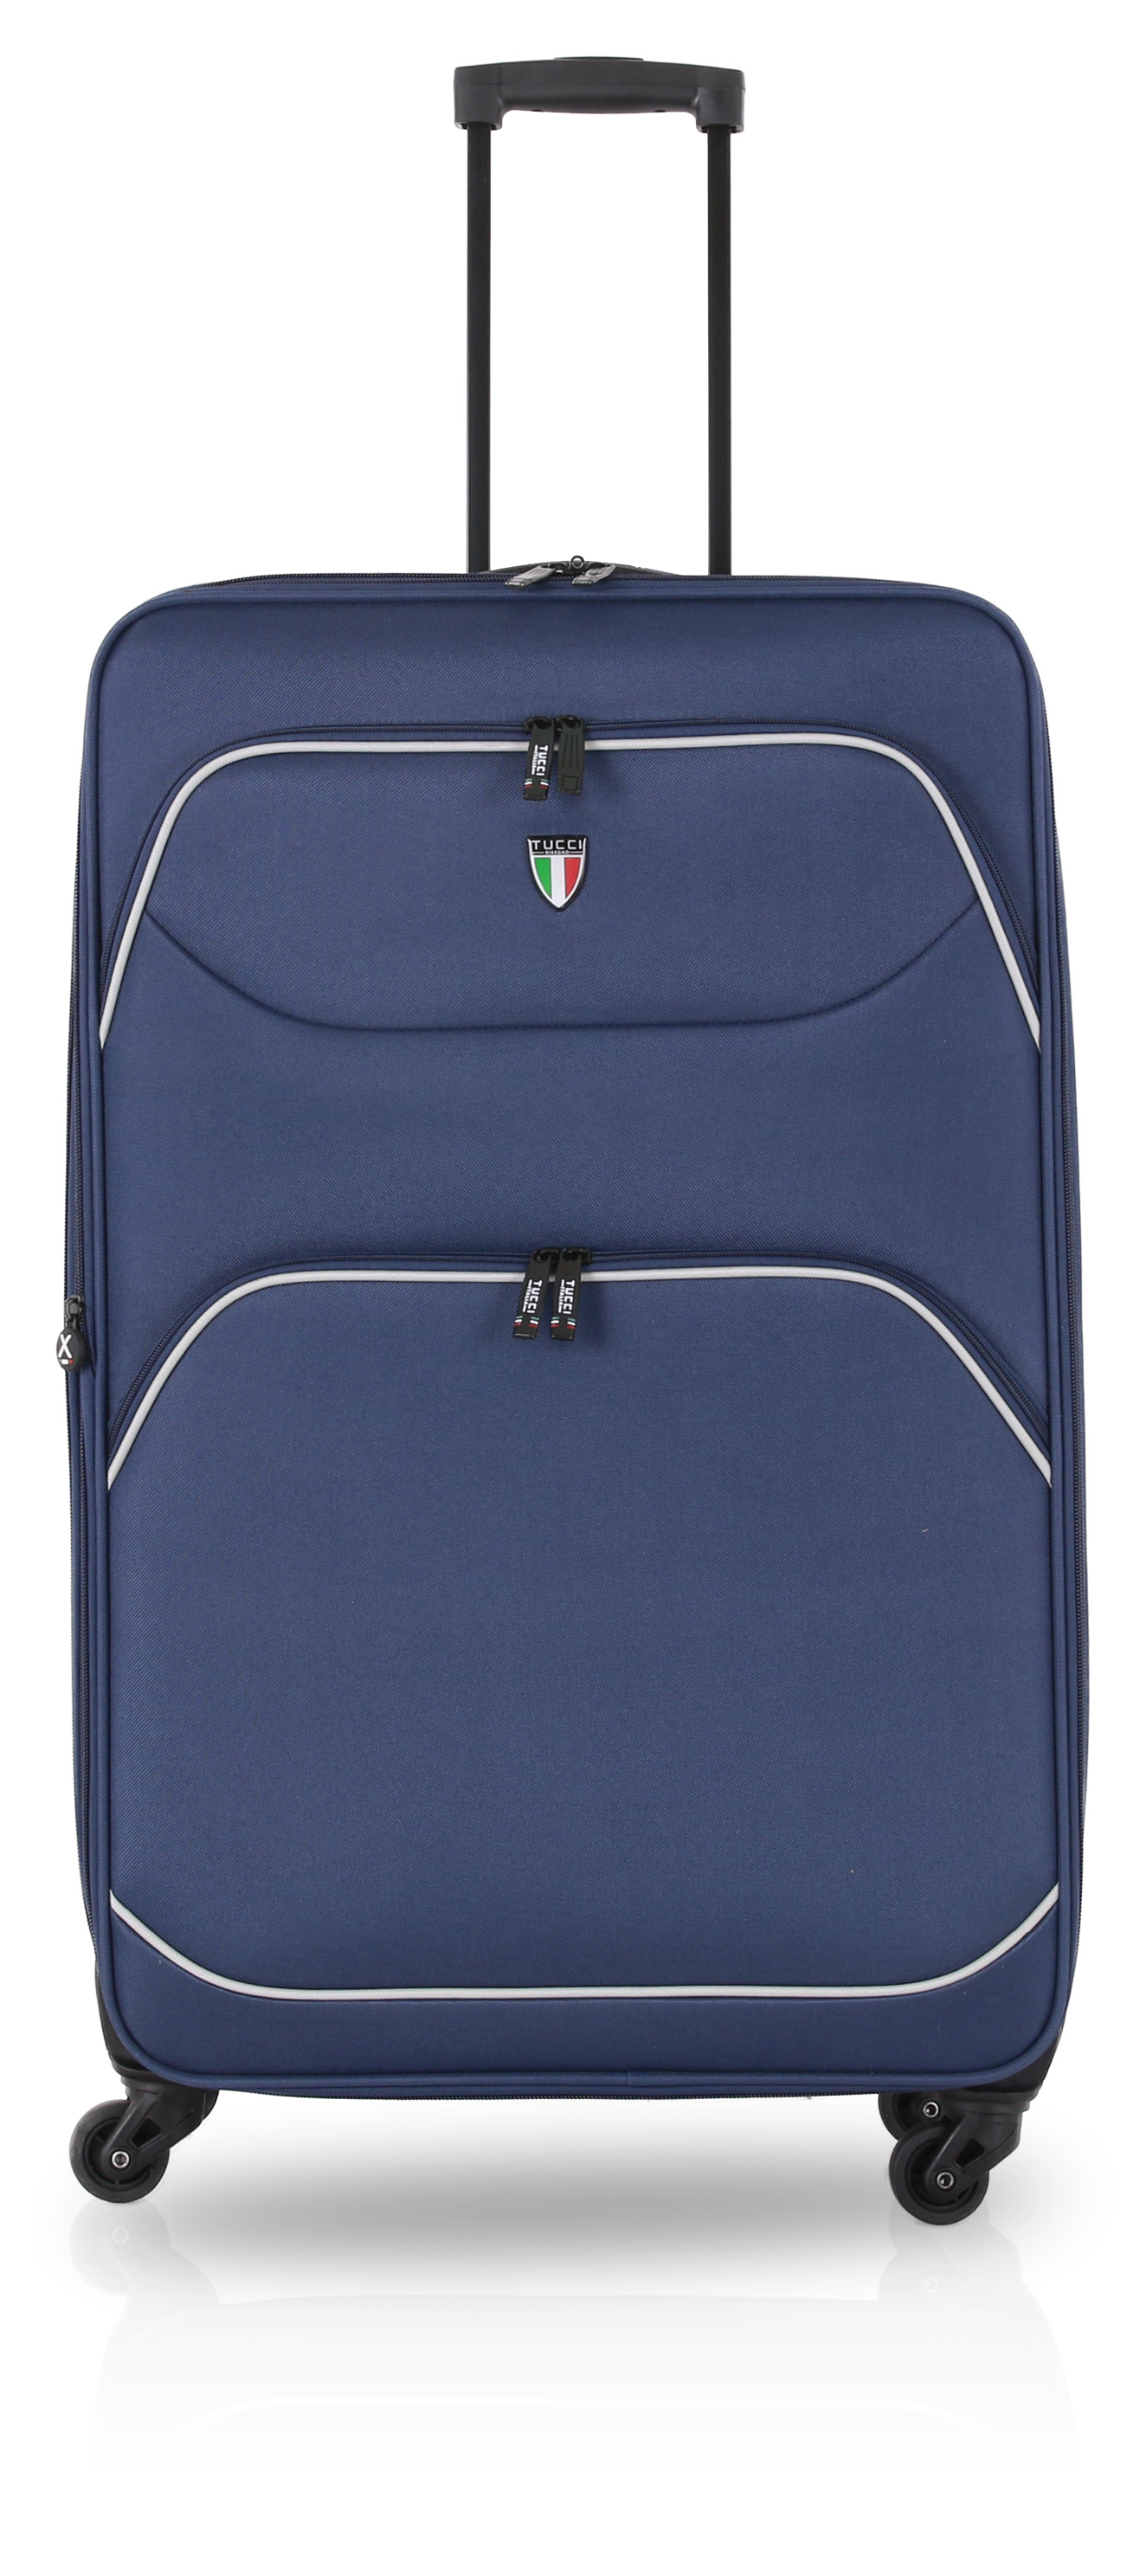 TUCCI BEN FATTO 3 PC (20", 24", 28") Luggage Suitcase Set